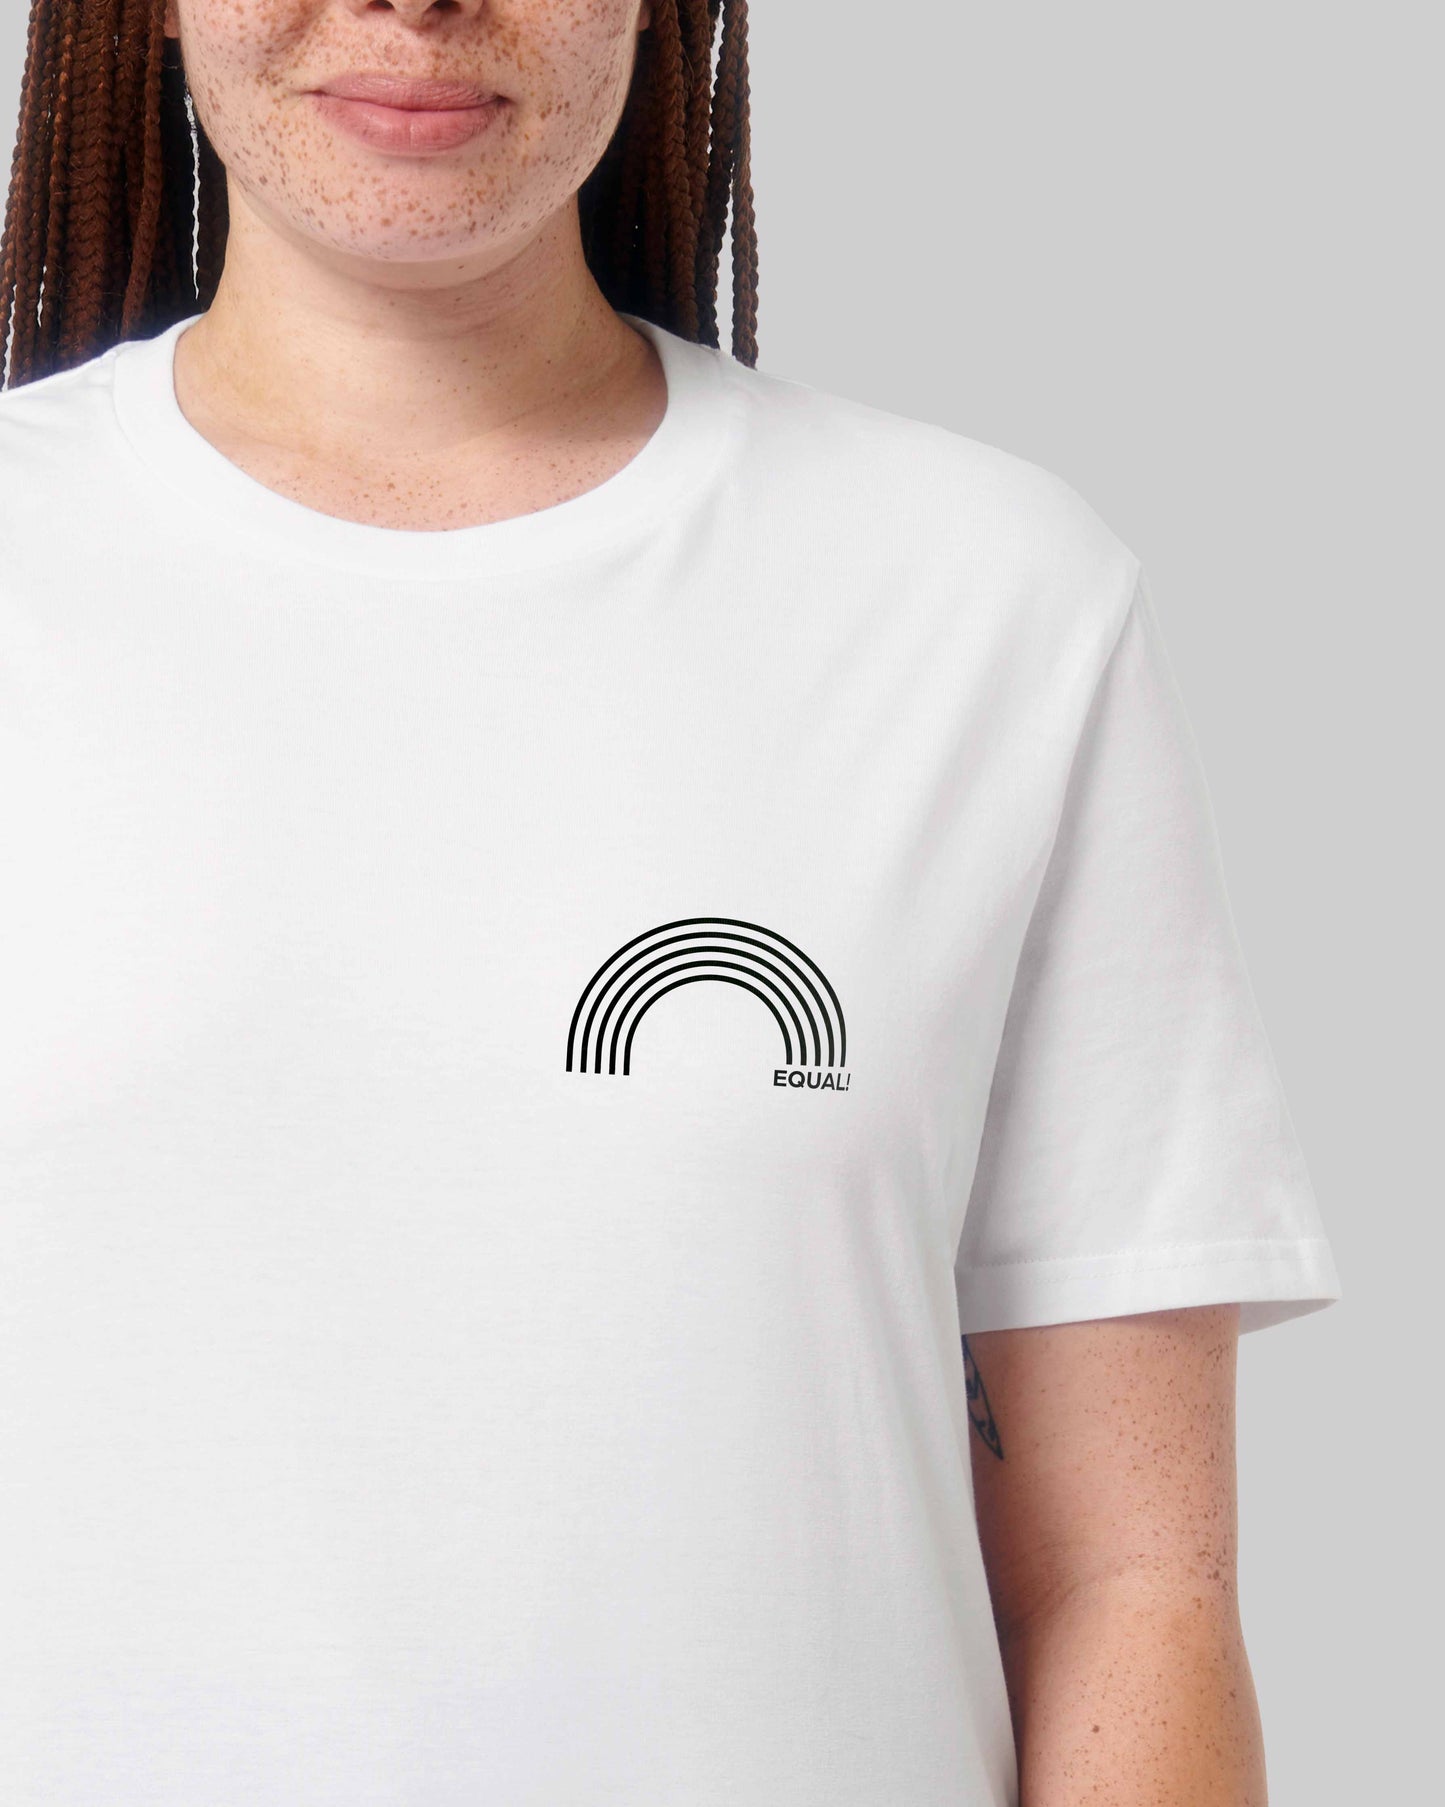 EINHORST® unisex Organic Shirt in weiß mit dem Motiv "equal-Regenbogen" in der Kombination schwarzer Regenbogen mit schwarzer Schrift, Bild von weiblicher Person mit Shirt